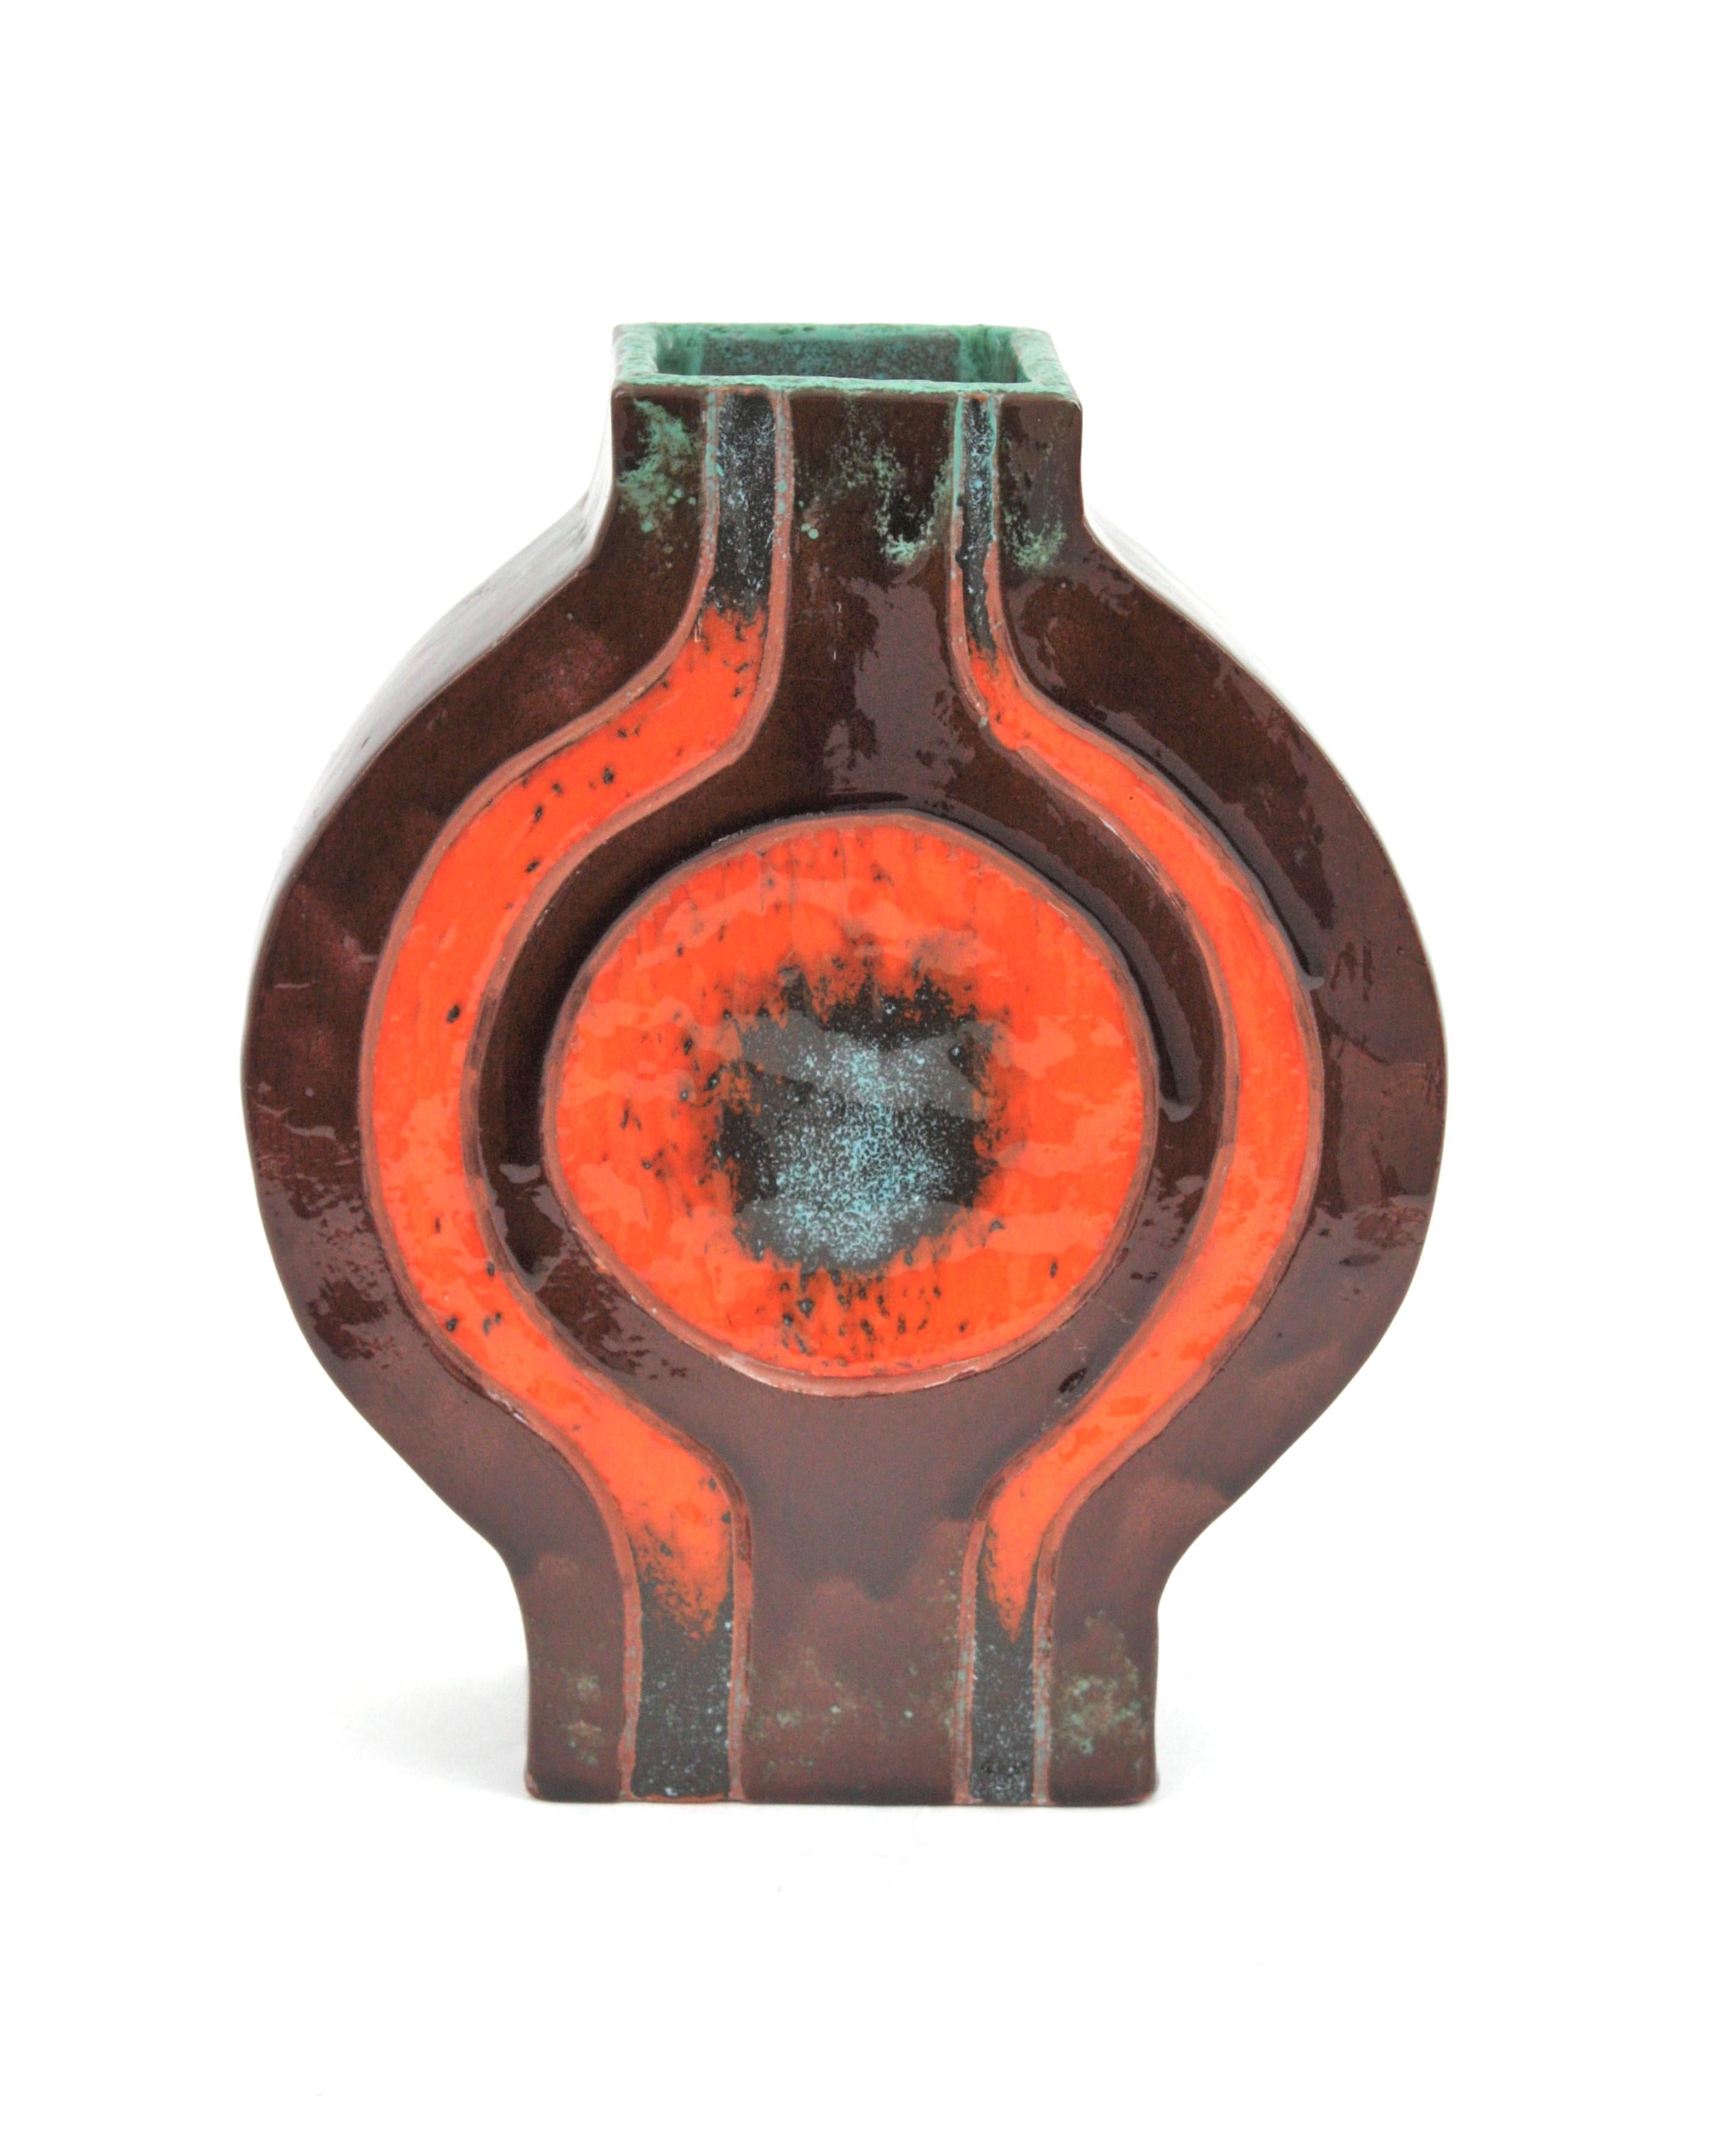 Vase géométrique en céramique émaillée, Espagne, années 1970
Céramique orange et marron avec des accents turquoise.
A utiliser comme vase décoratif, vase à fleurs. Exposez-le seul ou dans le cadre d'une collection de céramiques.
Signé